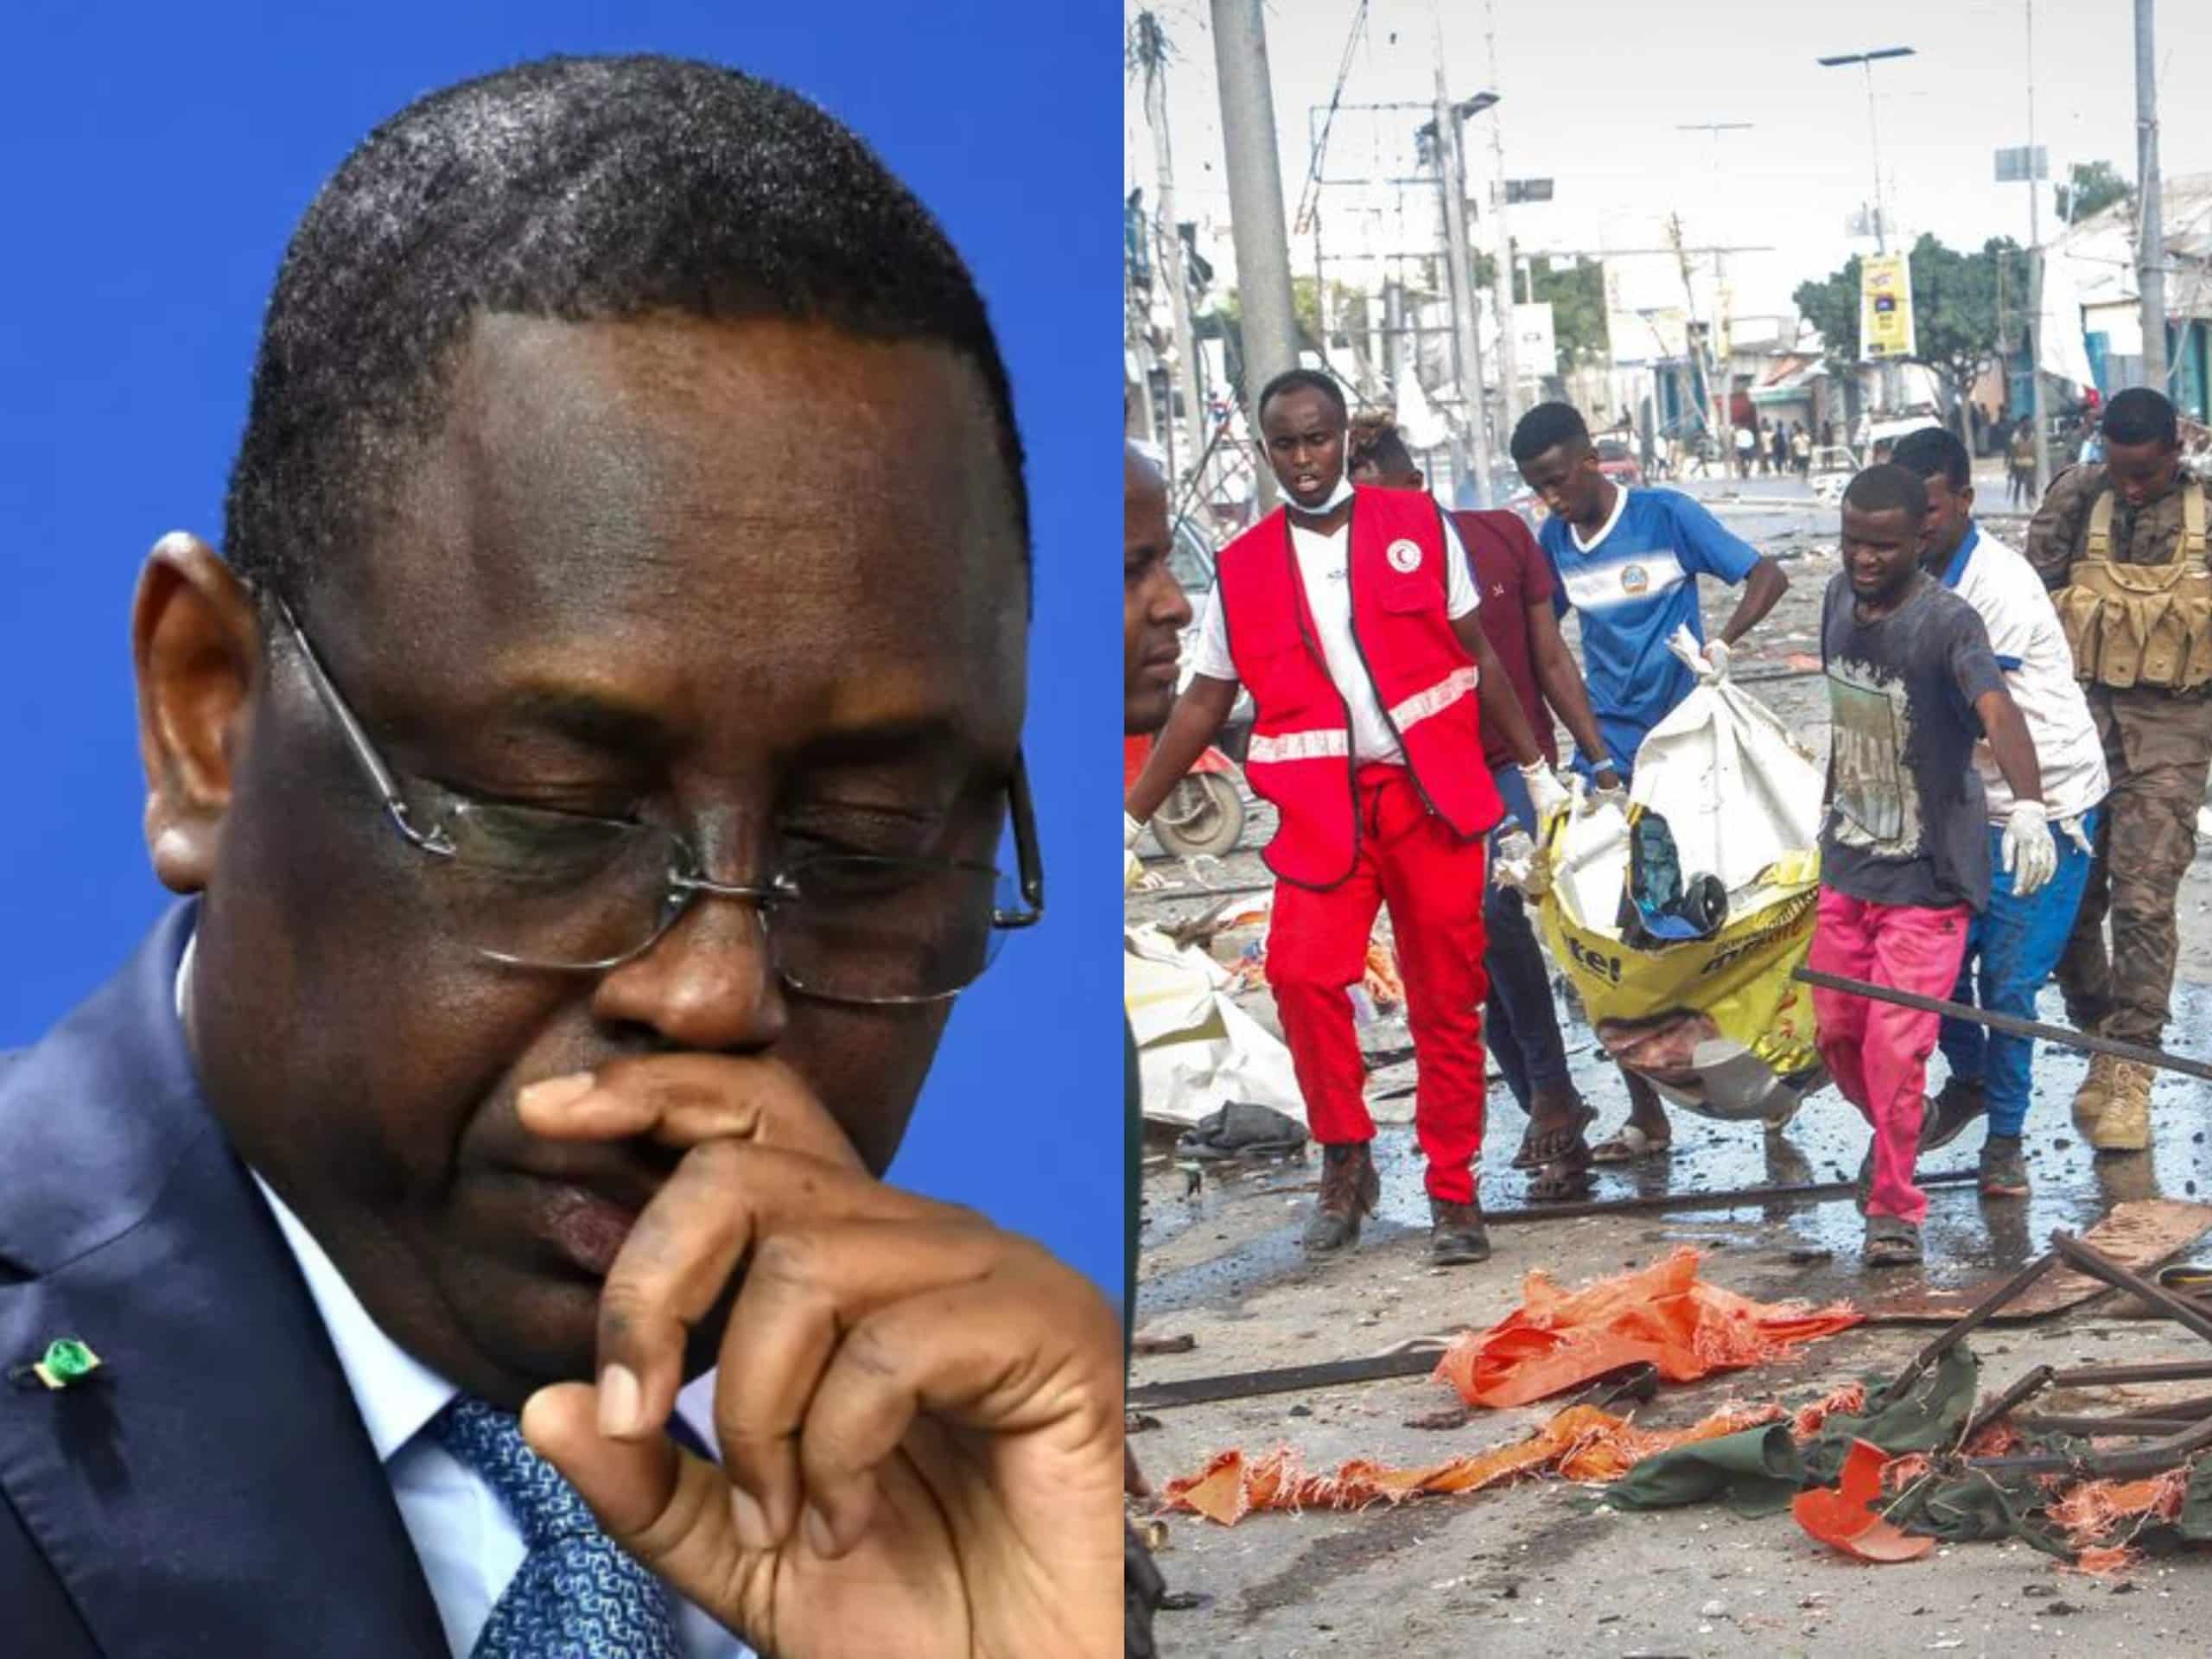 Somalie : Macky Sall présente ses condoléances suite aux attentats meurtriers